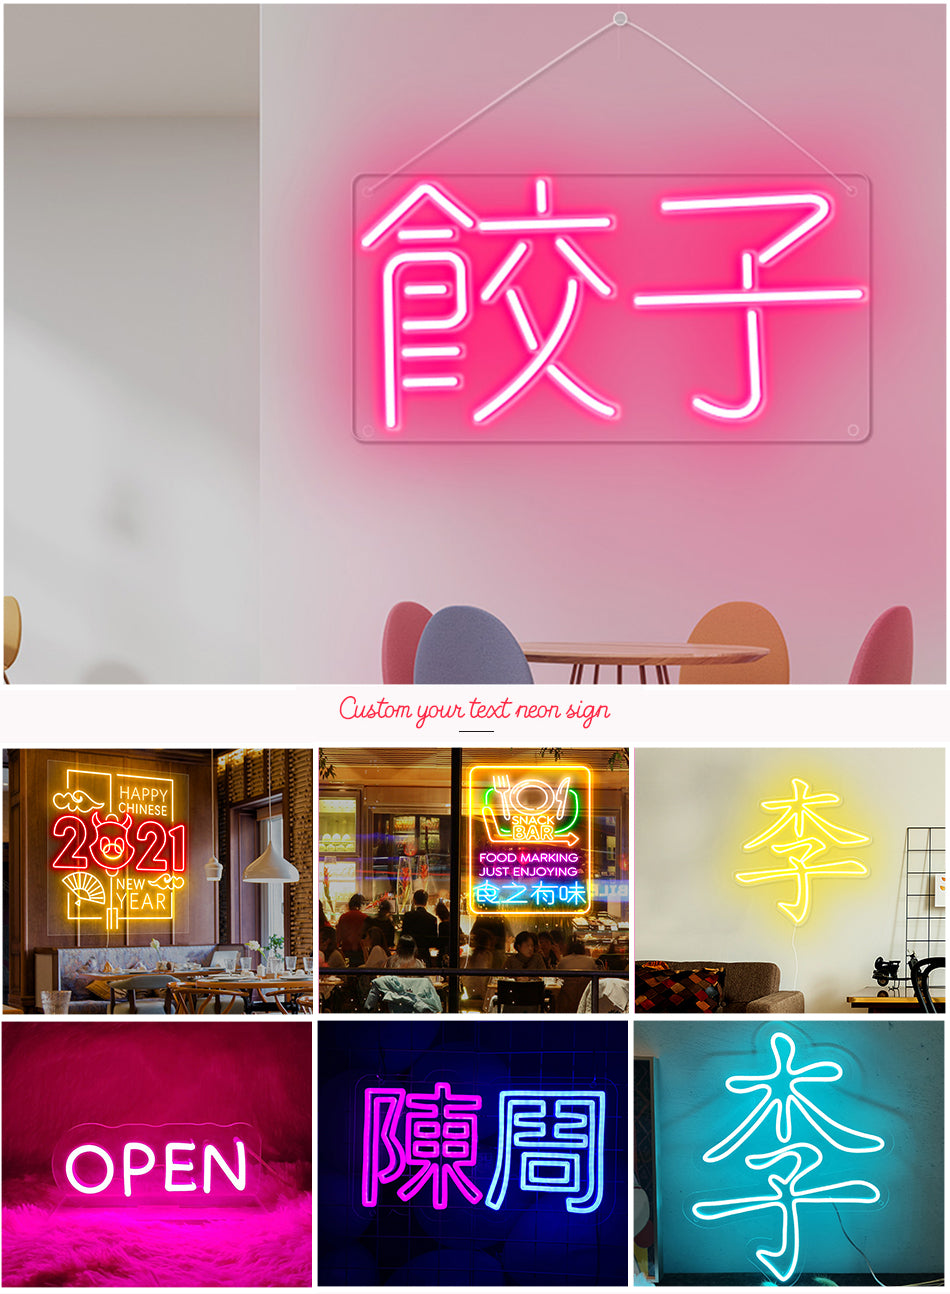 Dumplings neon sign